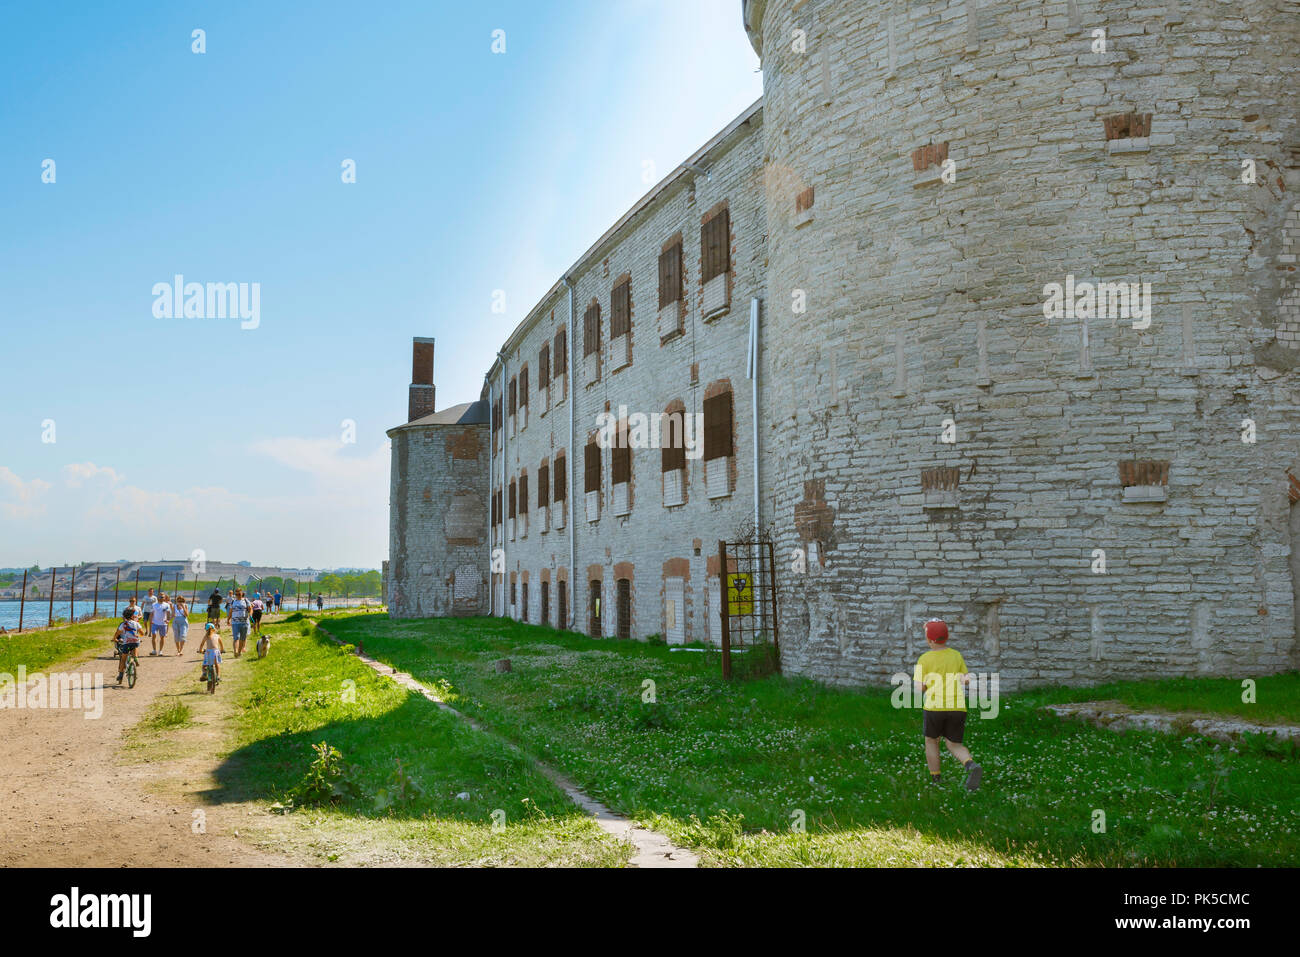 Das Patarei-Gefängnis, an einem Sommernachmittag laufen Menschen am verlassenen und verderblichen Patarei-Gefängnisgebäude im Kalamaja-Erkergebiet von Tallinn, Estland, vorbei Stockfoto